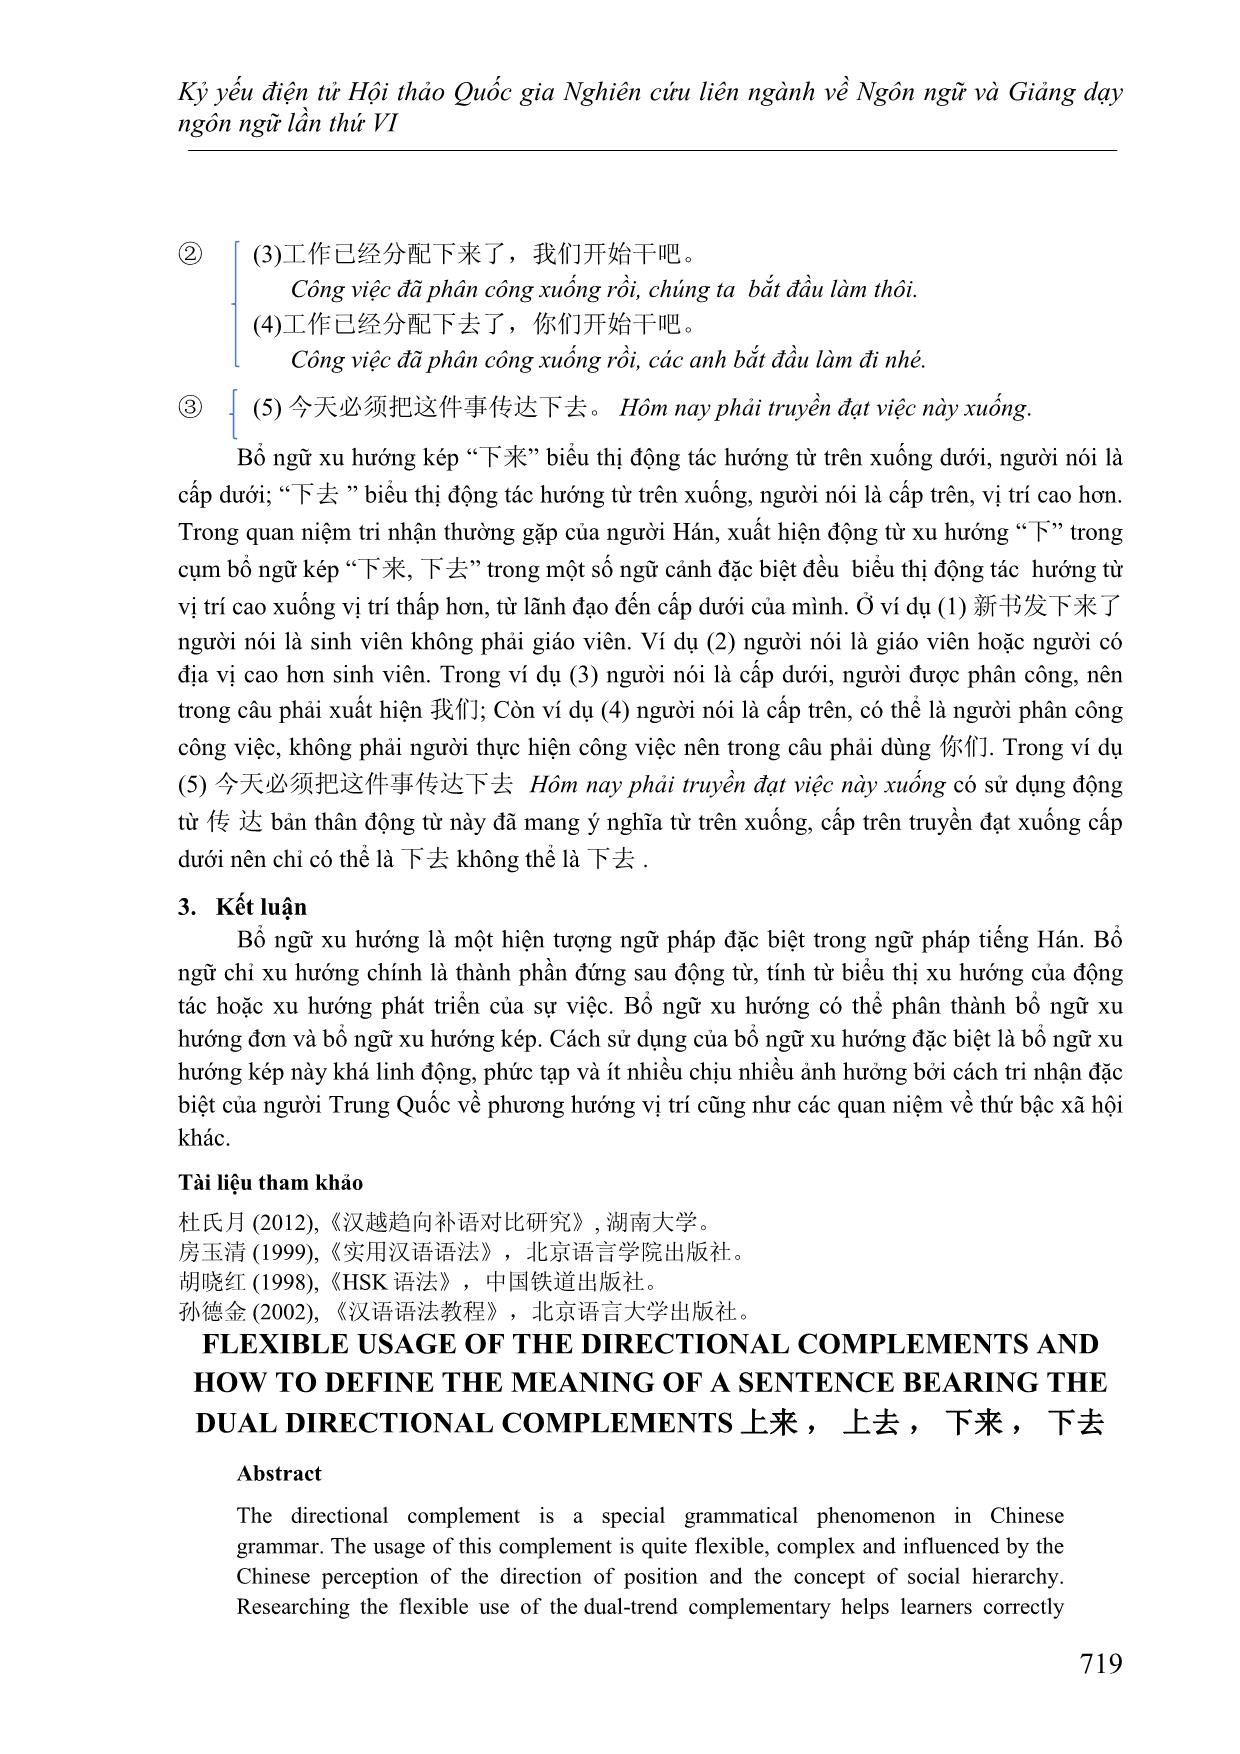 Cách dùng linh hoạt của bổ ngữ xu hướng và cách xác định ý nghĩa của câu khi sử dụng bổ ngữ xu hướng kép 上来, 上去, 下来,下 trang 9